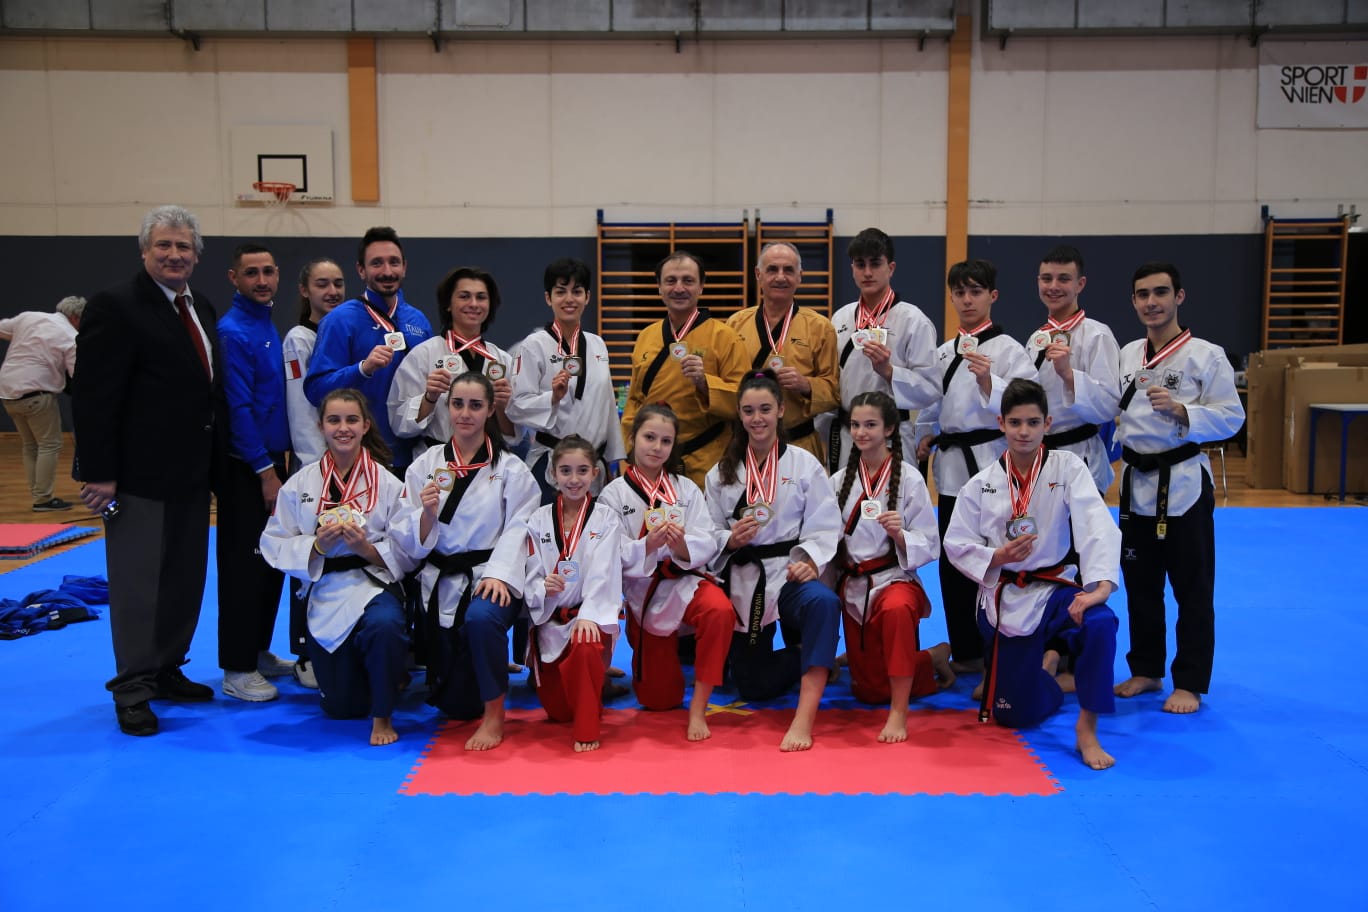 taekwondo austrian open 2020 12 medaglie vittoria italia italy vienna 12 medals poomsae oro argento bronzo